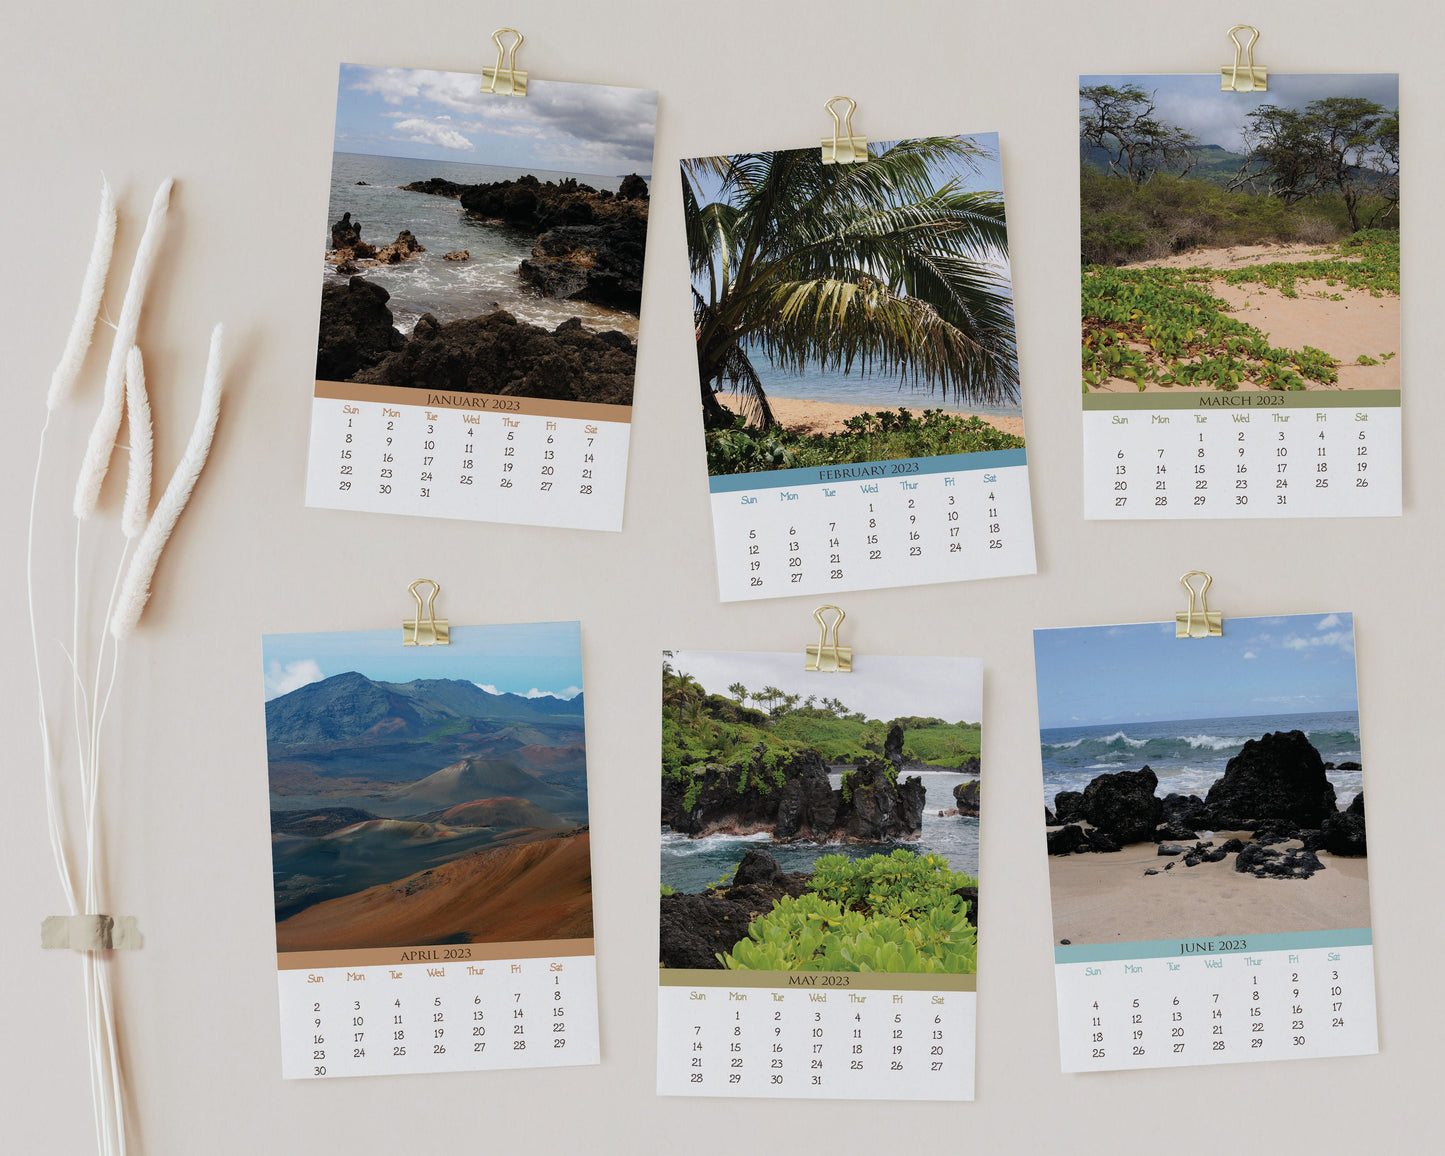 2023 Photo Calendar - Maui